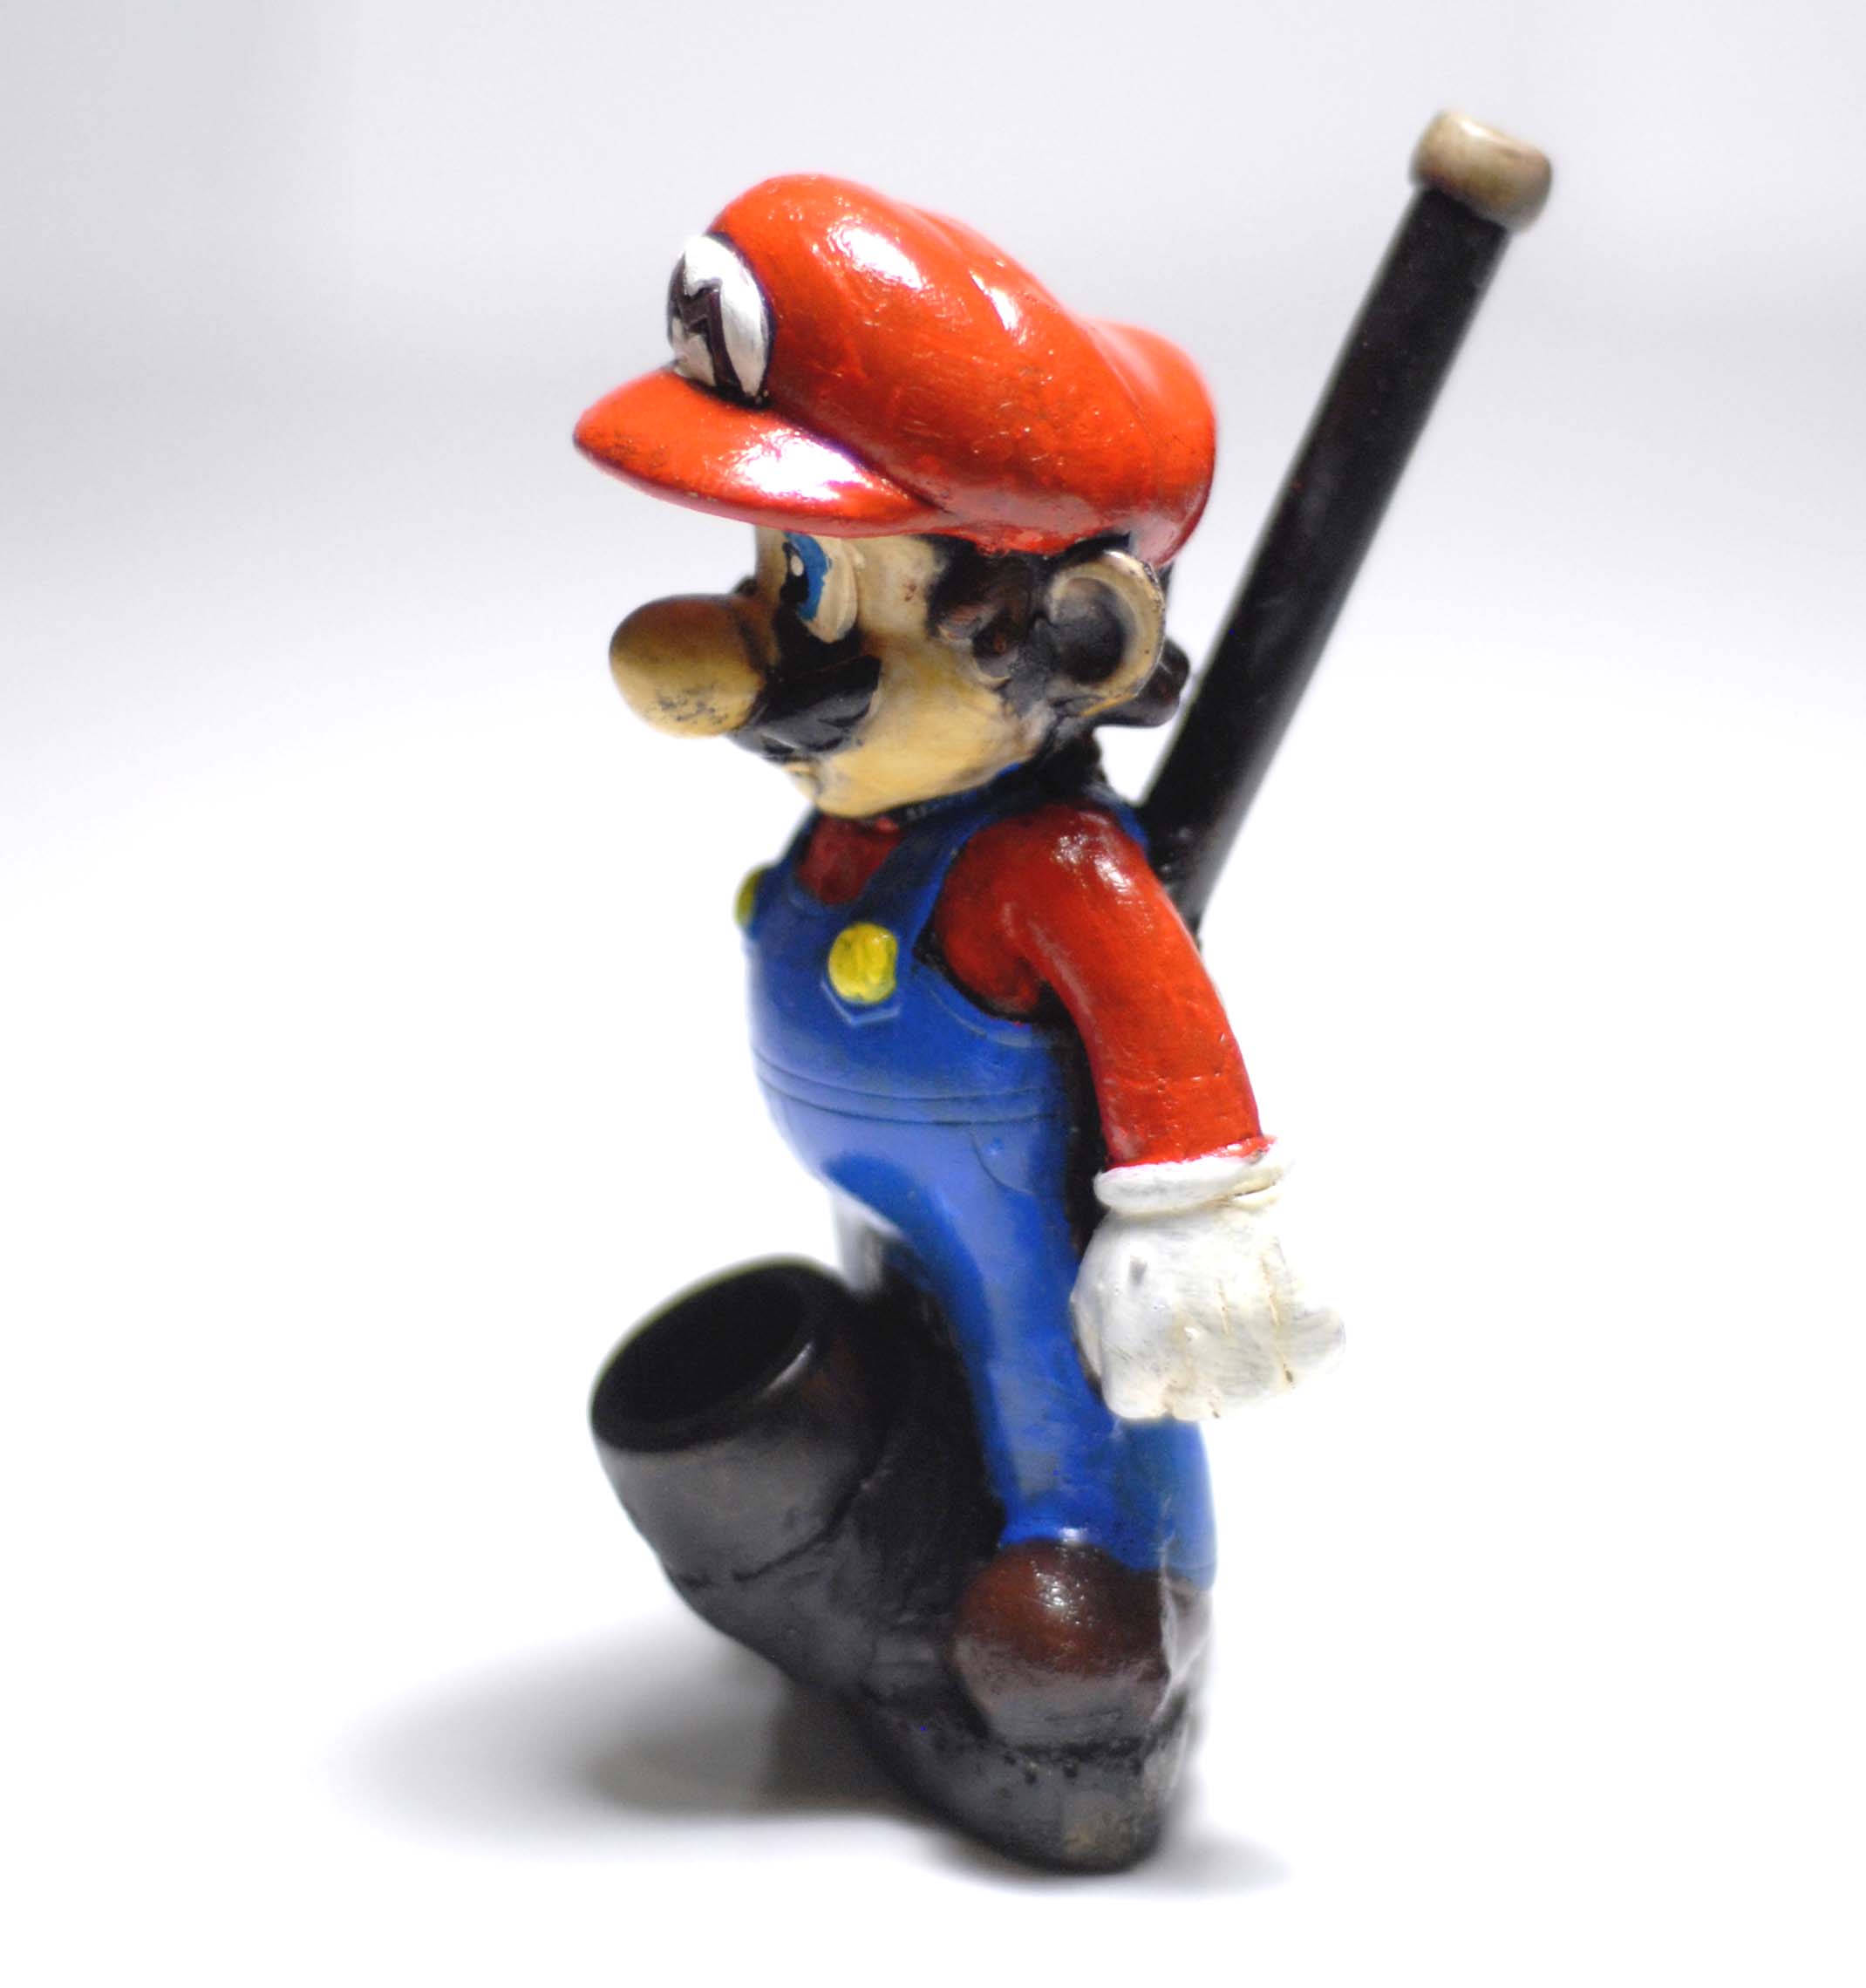 Super Mario Mario handmade Ceramic tobacco  Pipe.